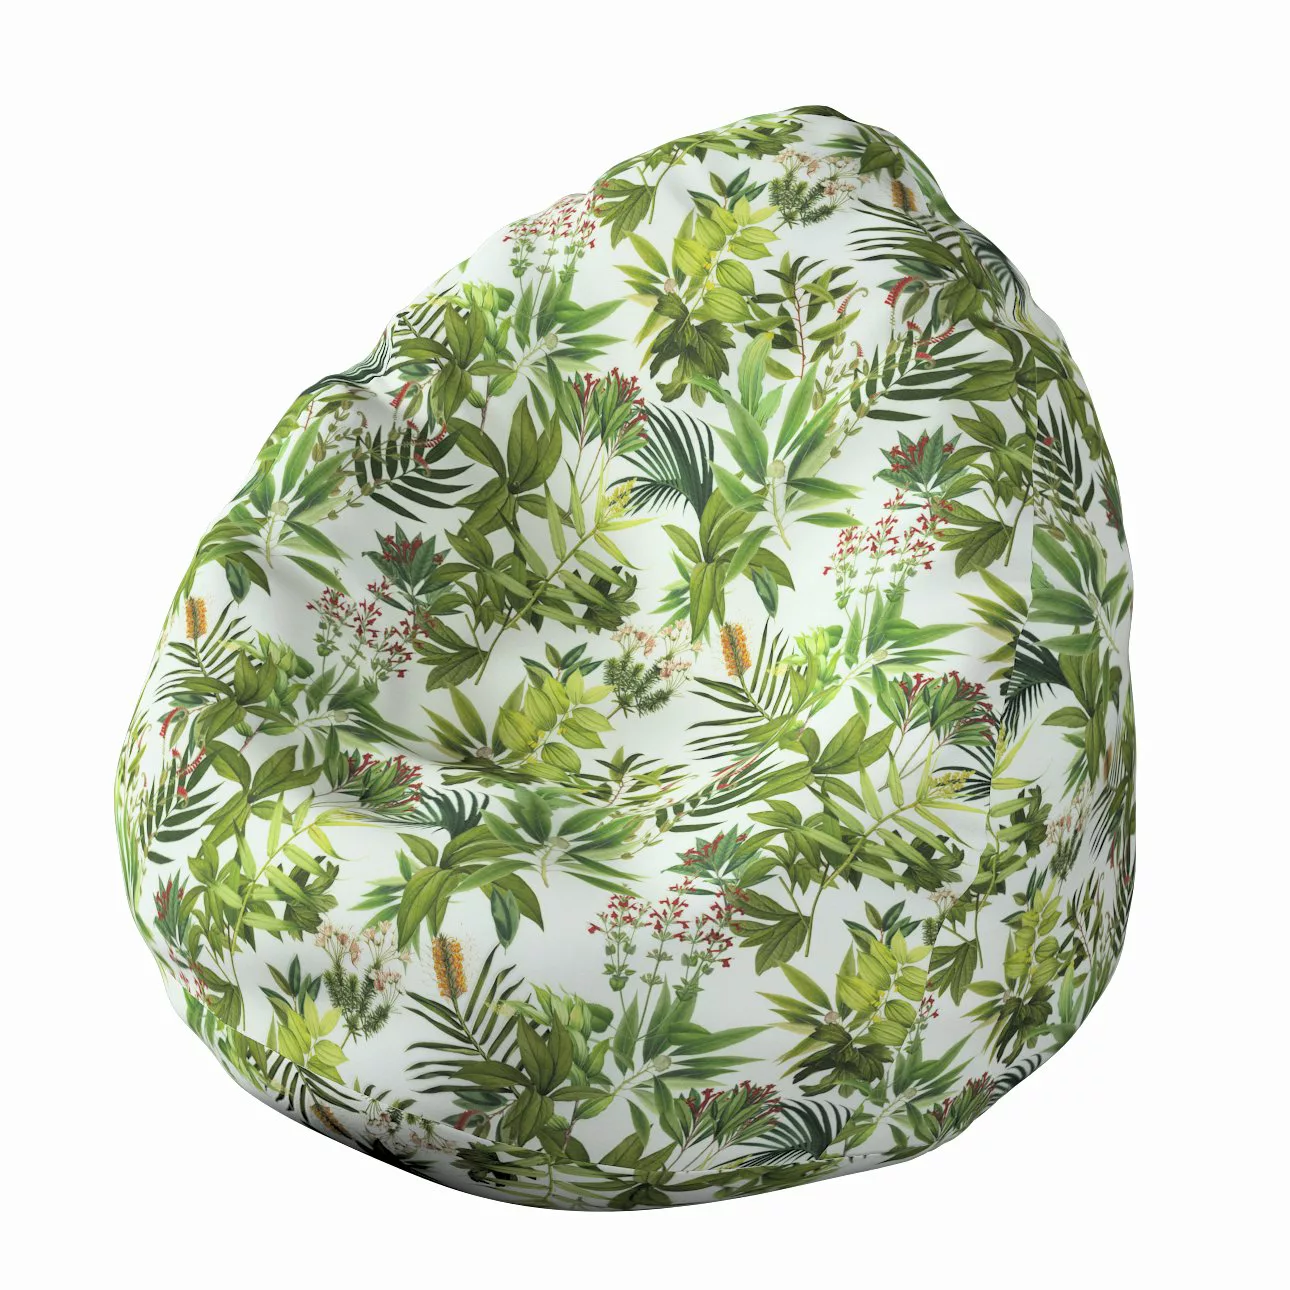 Bezug für Sitzsack, grün-weiß, Bezug für Sitzsack Ø80 x 115 cm, Tropical Is günstig online kaufen